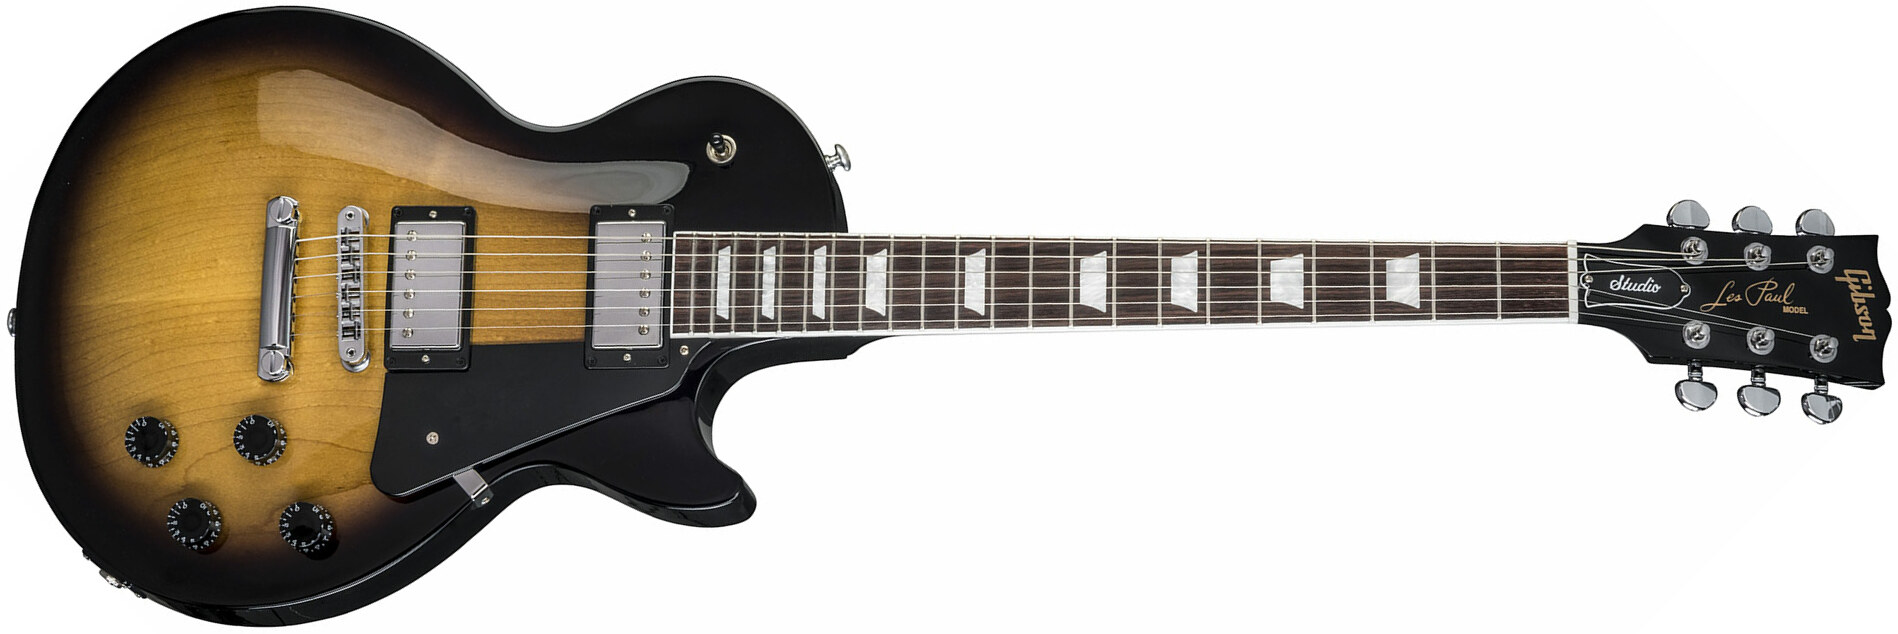 Gibson Les Paul Studio 2018 - Vintage Sunburst - Enkel gesneden elektrische gitaar - Main picture